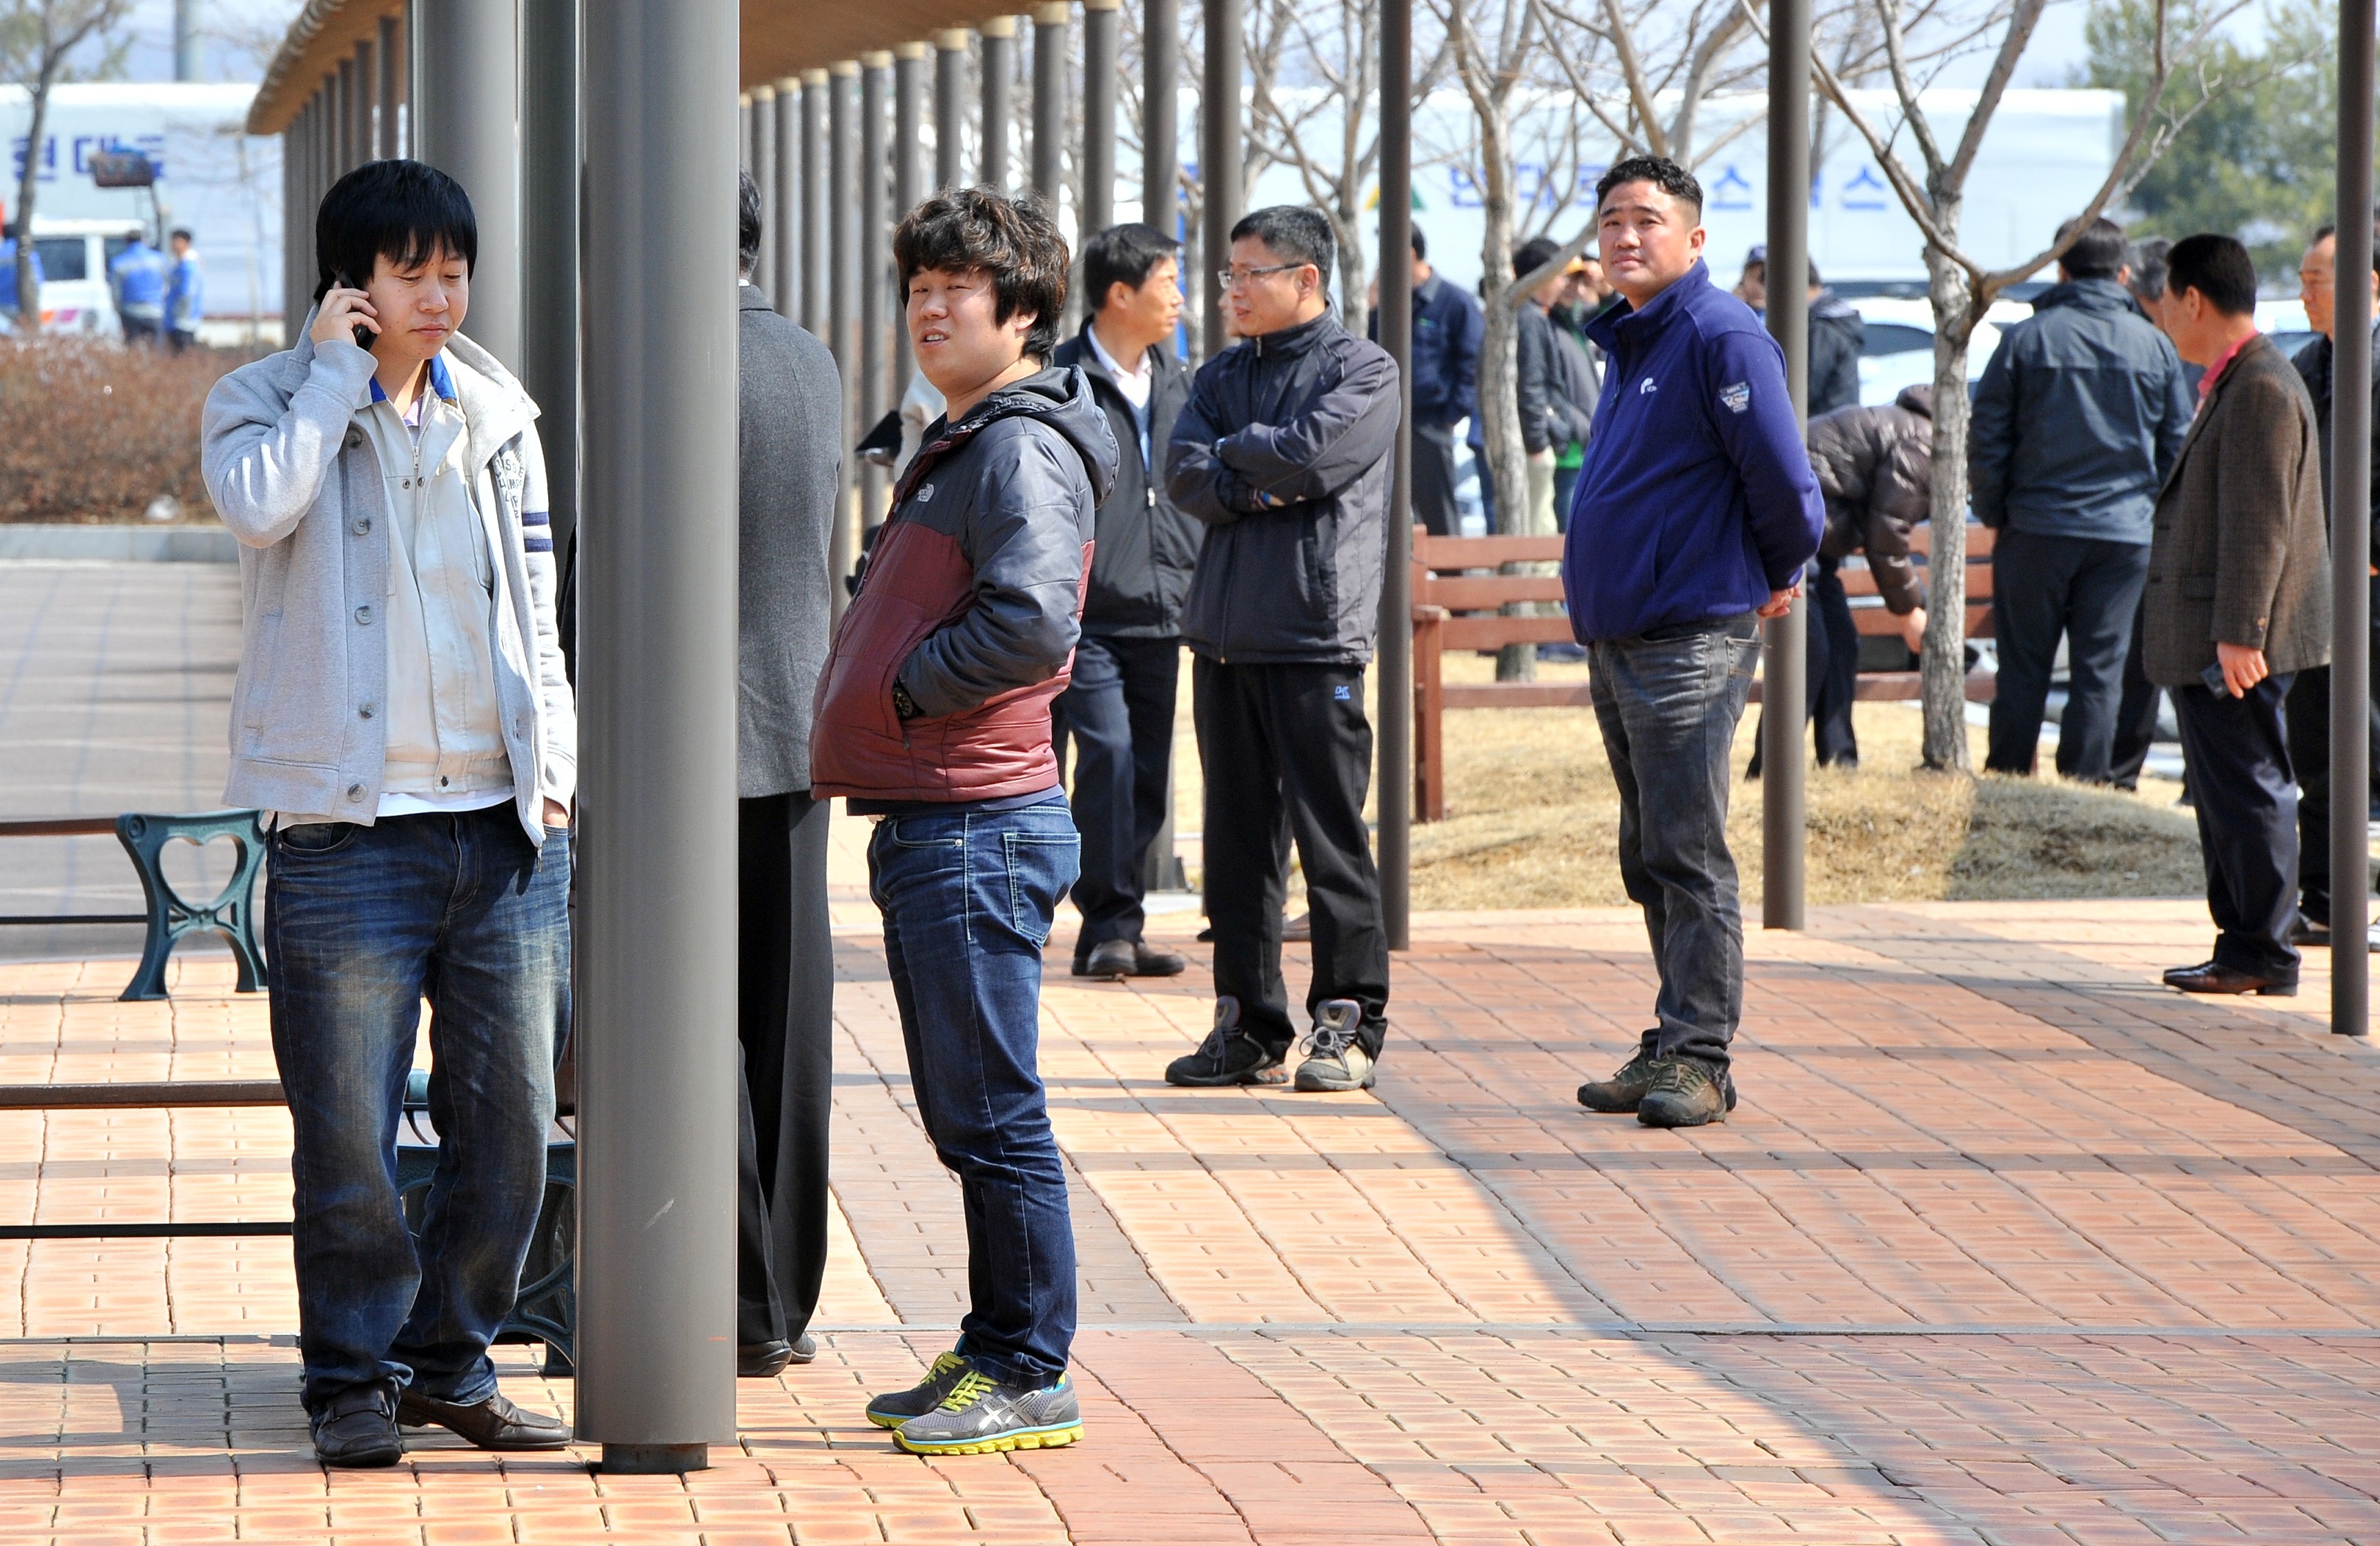 Trabalhadores sul-coreanos aguardam após entrada em fábrica ser impedida pela Coreia do Norte. (Foto: Jung Yeon-Je / AFP)